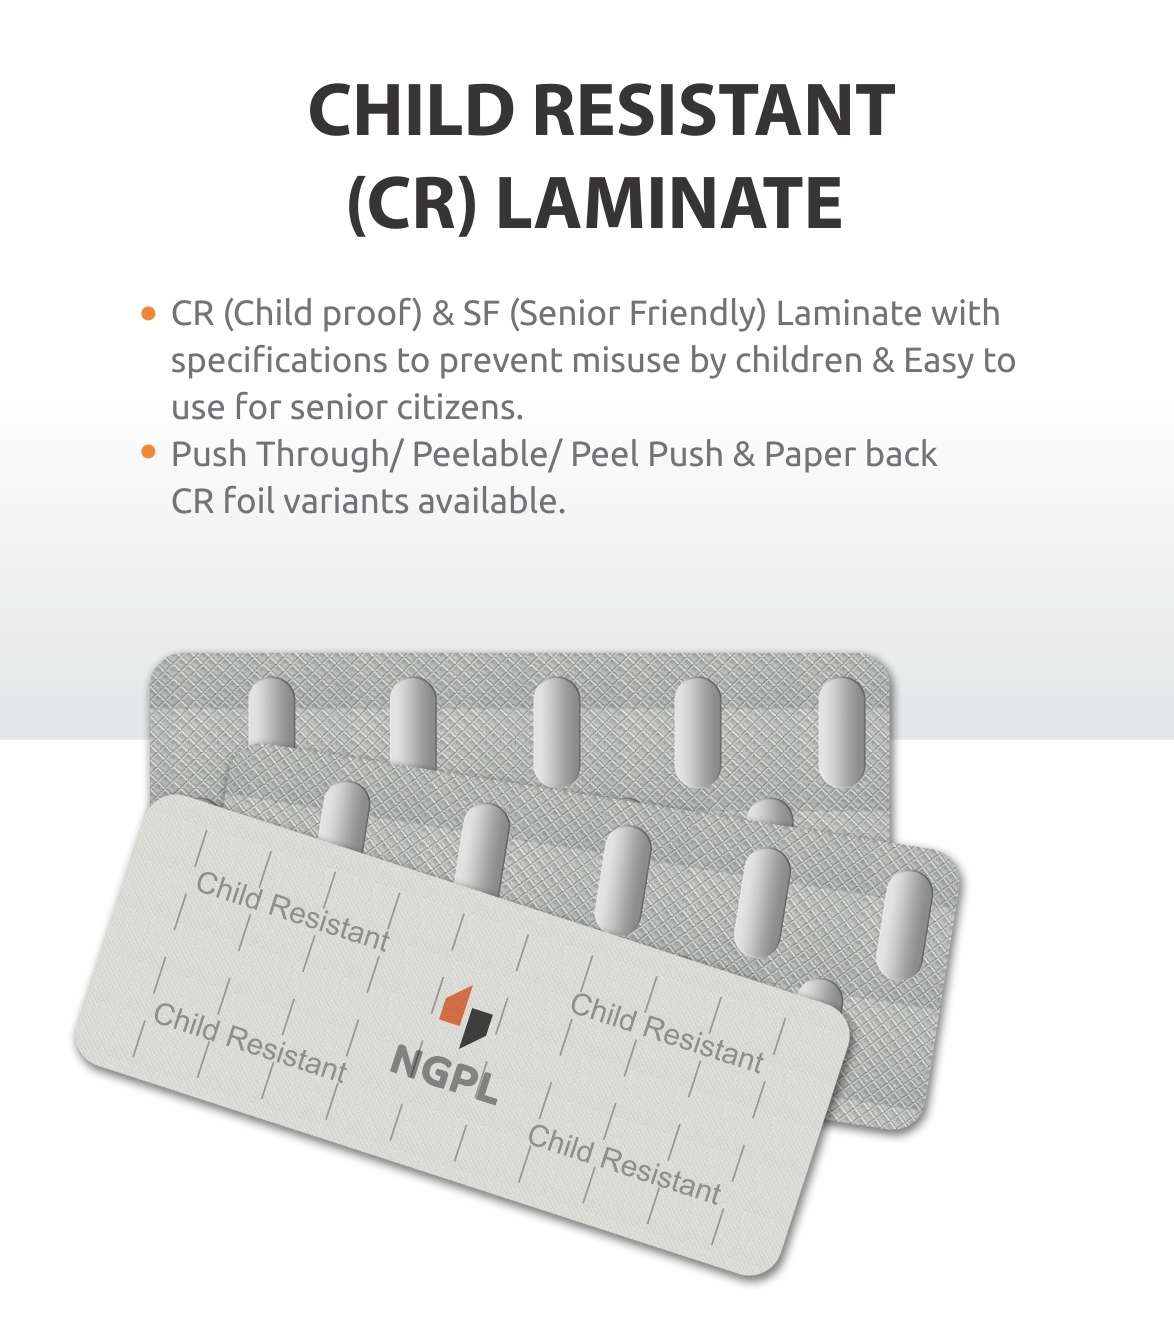 Child Resistant (CR) Laminate